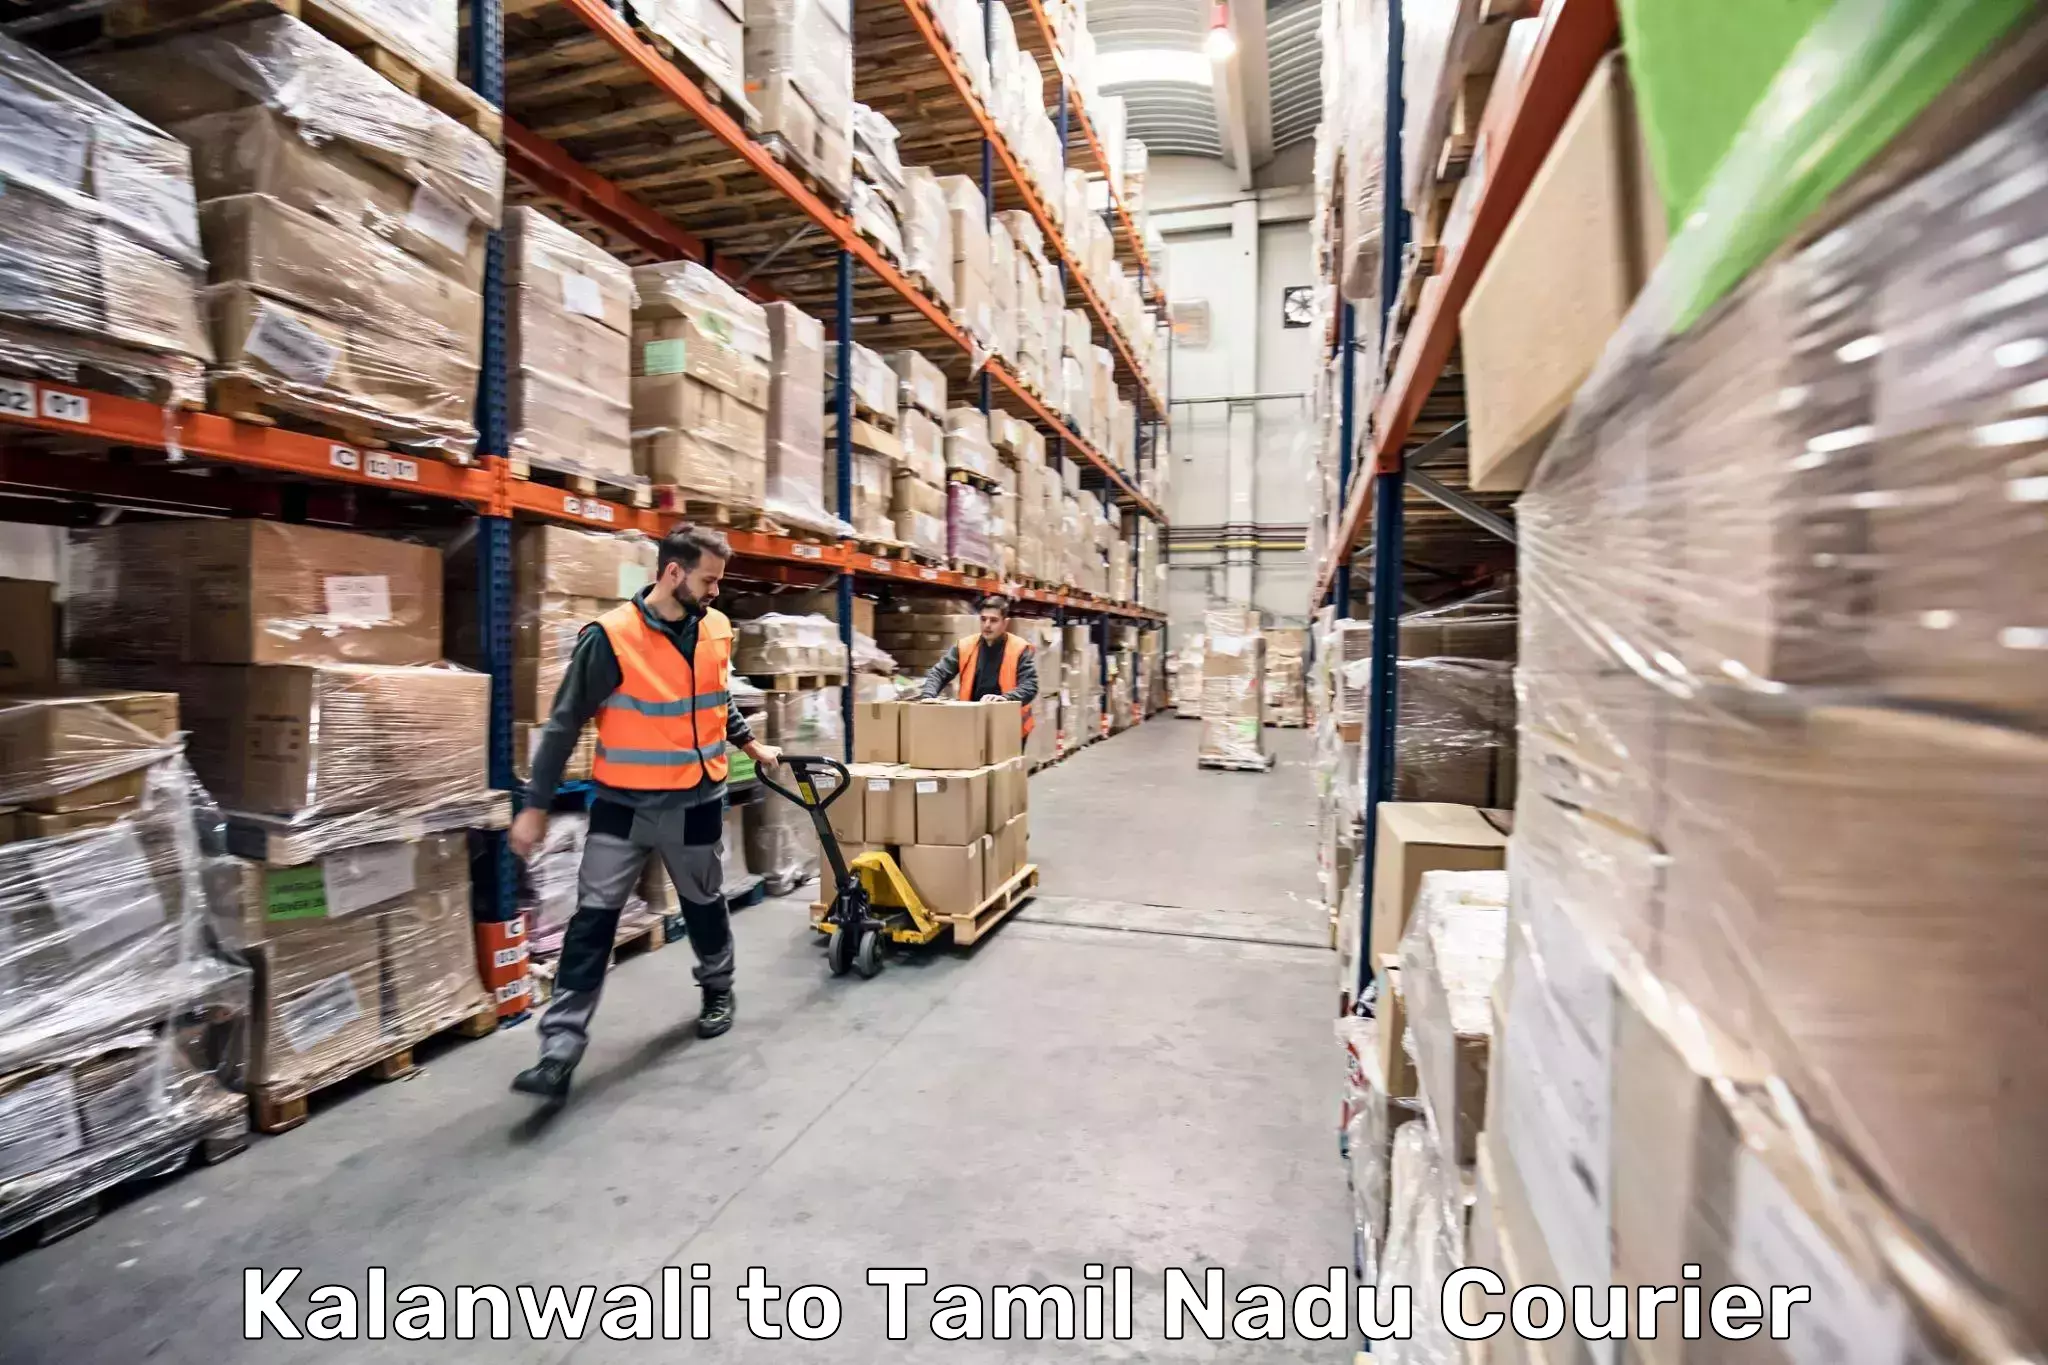 Luggage delivery app Kalanwali to Thiruvadanai